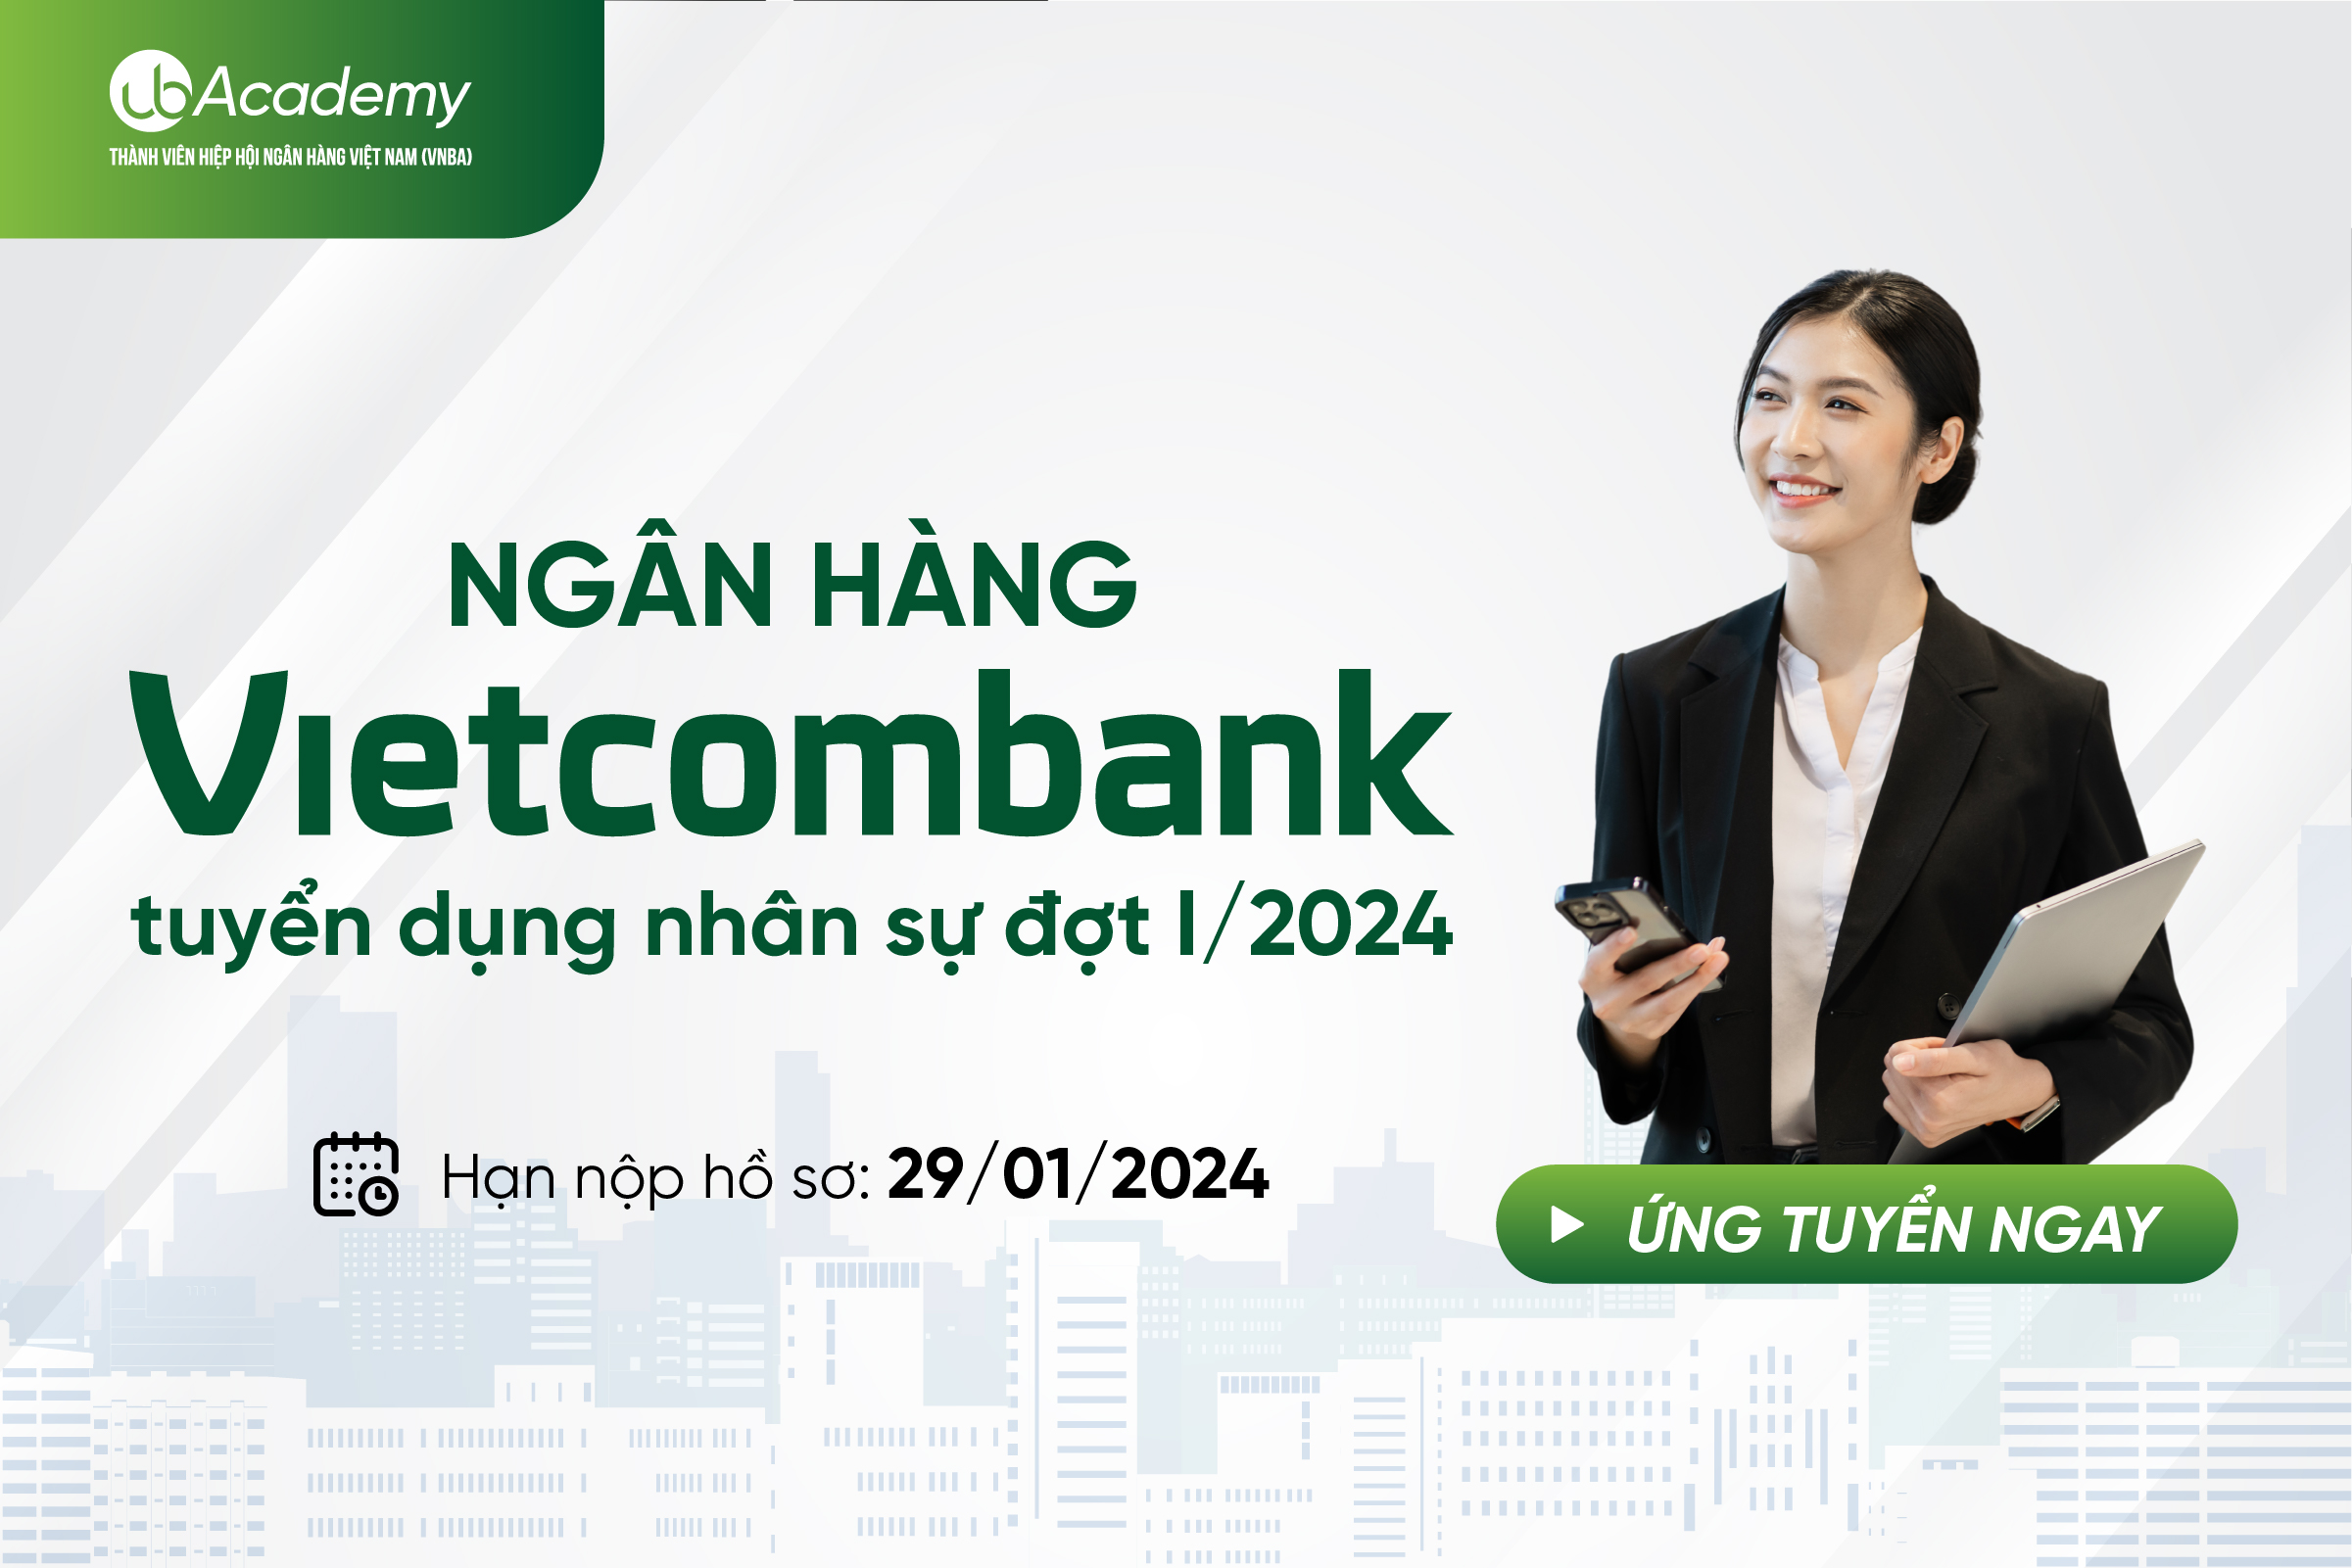 NGÂN HÀNG VIETCOMBANK TUYỂN DỤNG 29 NHÂN SỰ CHO ĐỢT I/2024